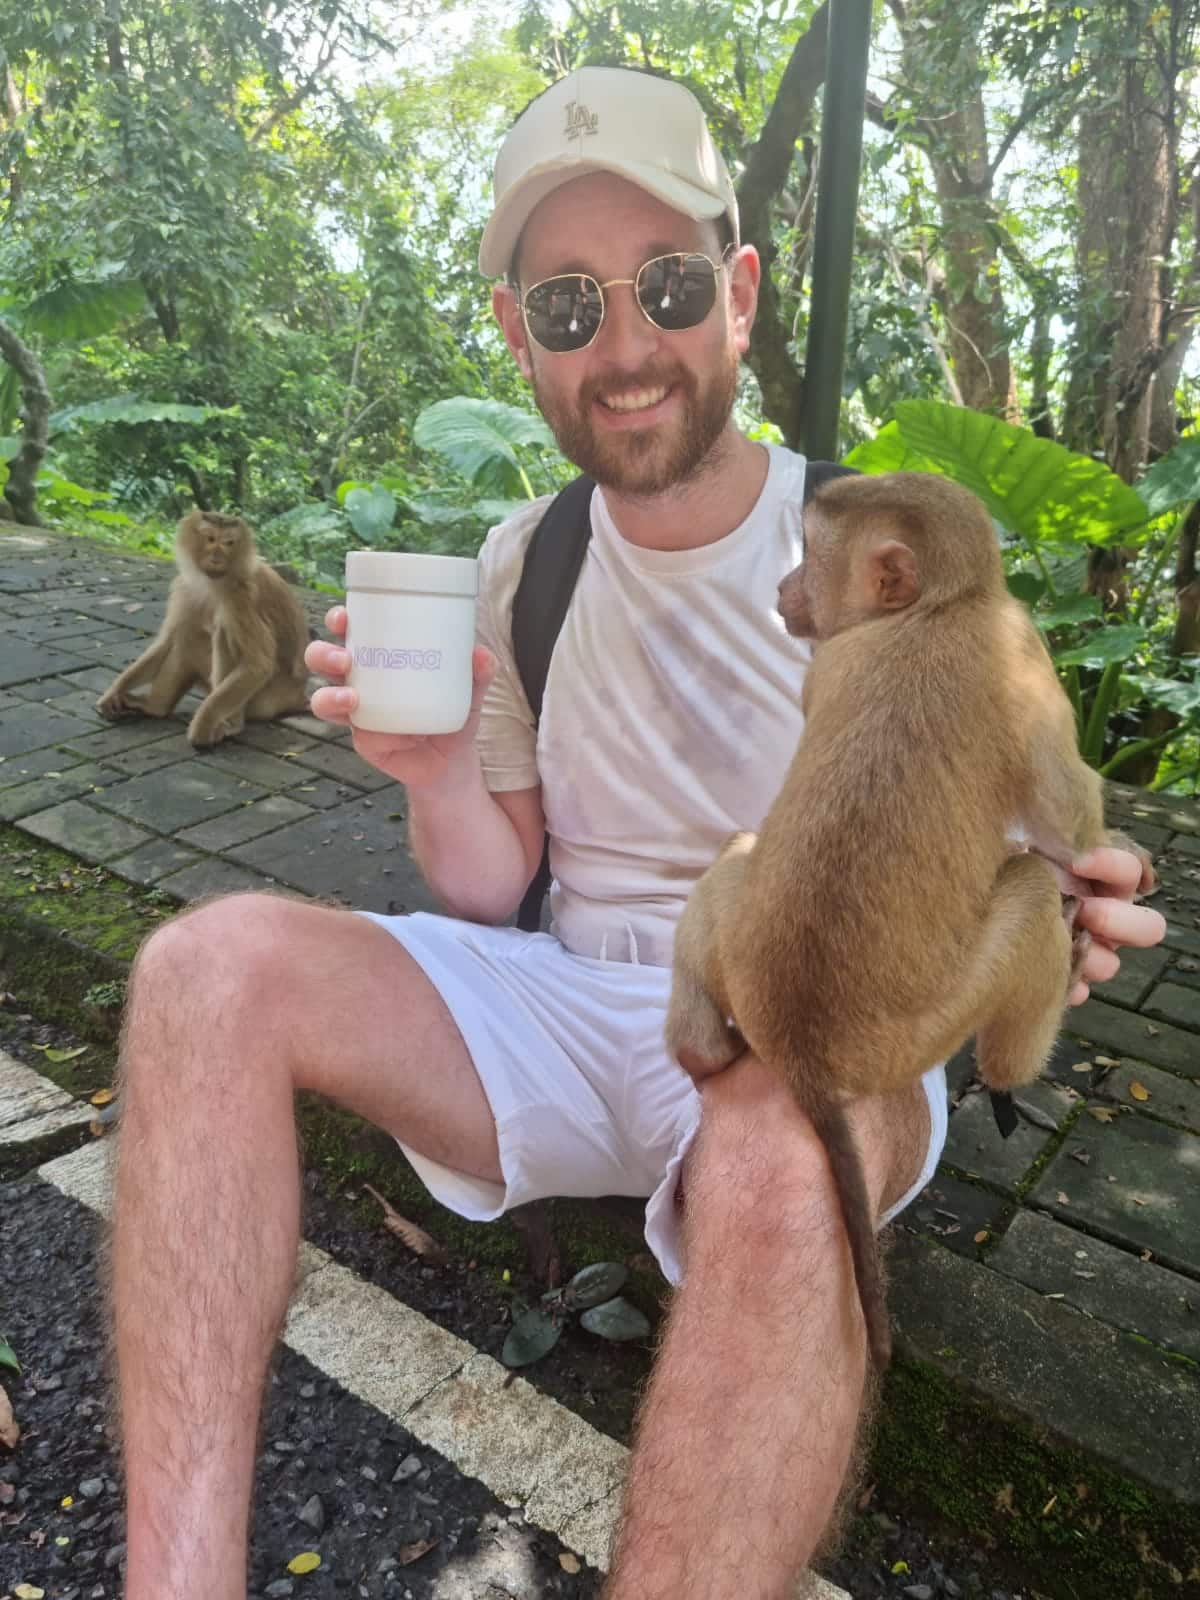 Ein lächelnder Mann mit einer weißen Baseballmütze sitzt in einer tropischen Umgebung, hält einen Getränkebecher in der rechten Hand und berührt mit der linken Hand einen braunen Affen, der auf seinem linken Knie balanciert.